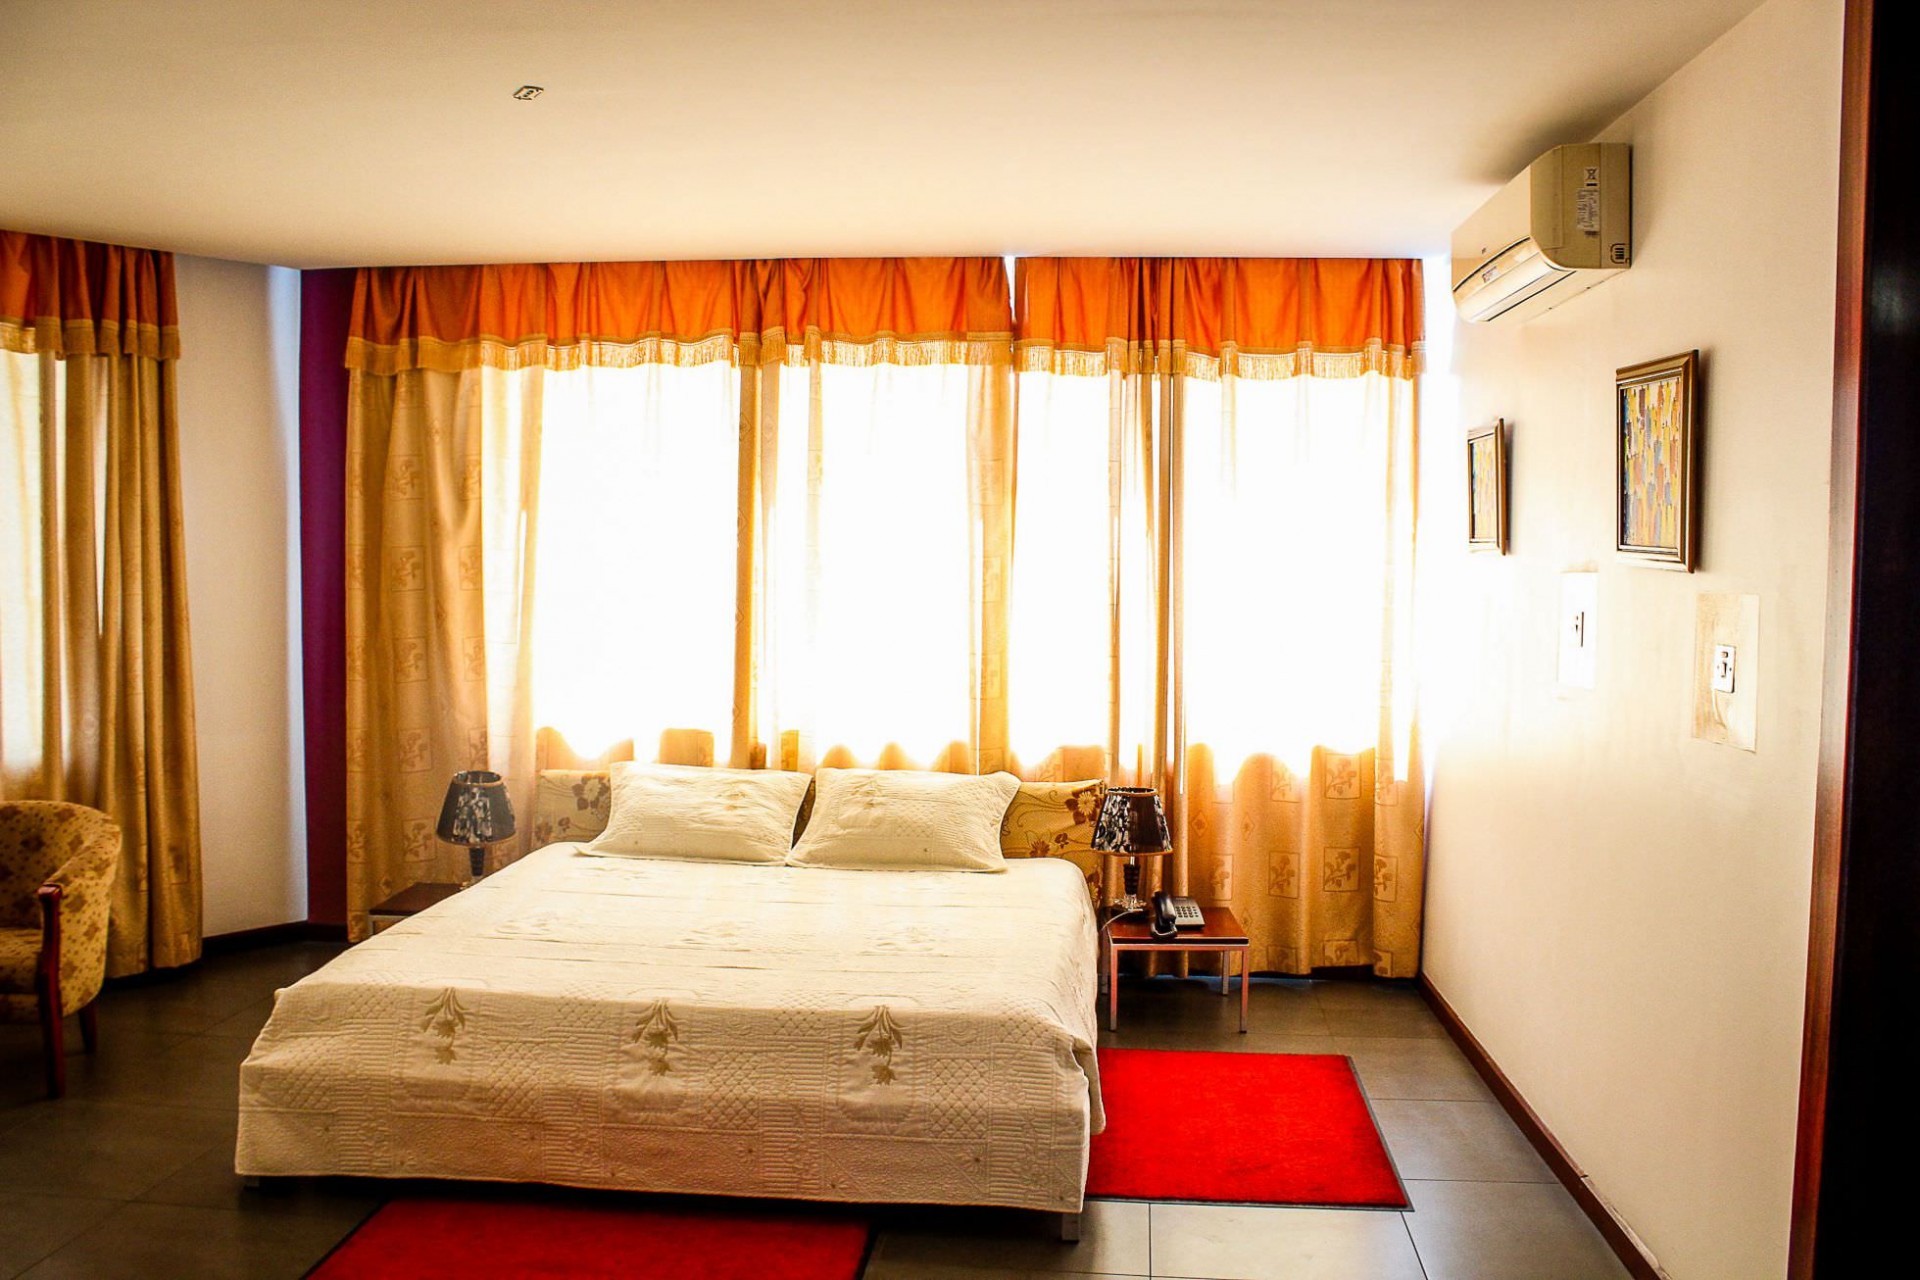 Maxlot Hotel Accra-Room View